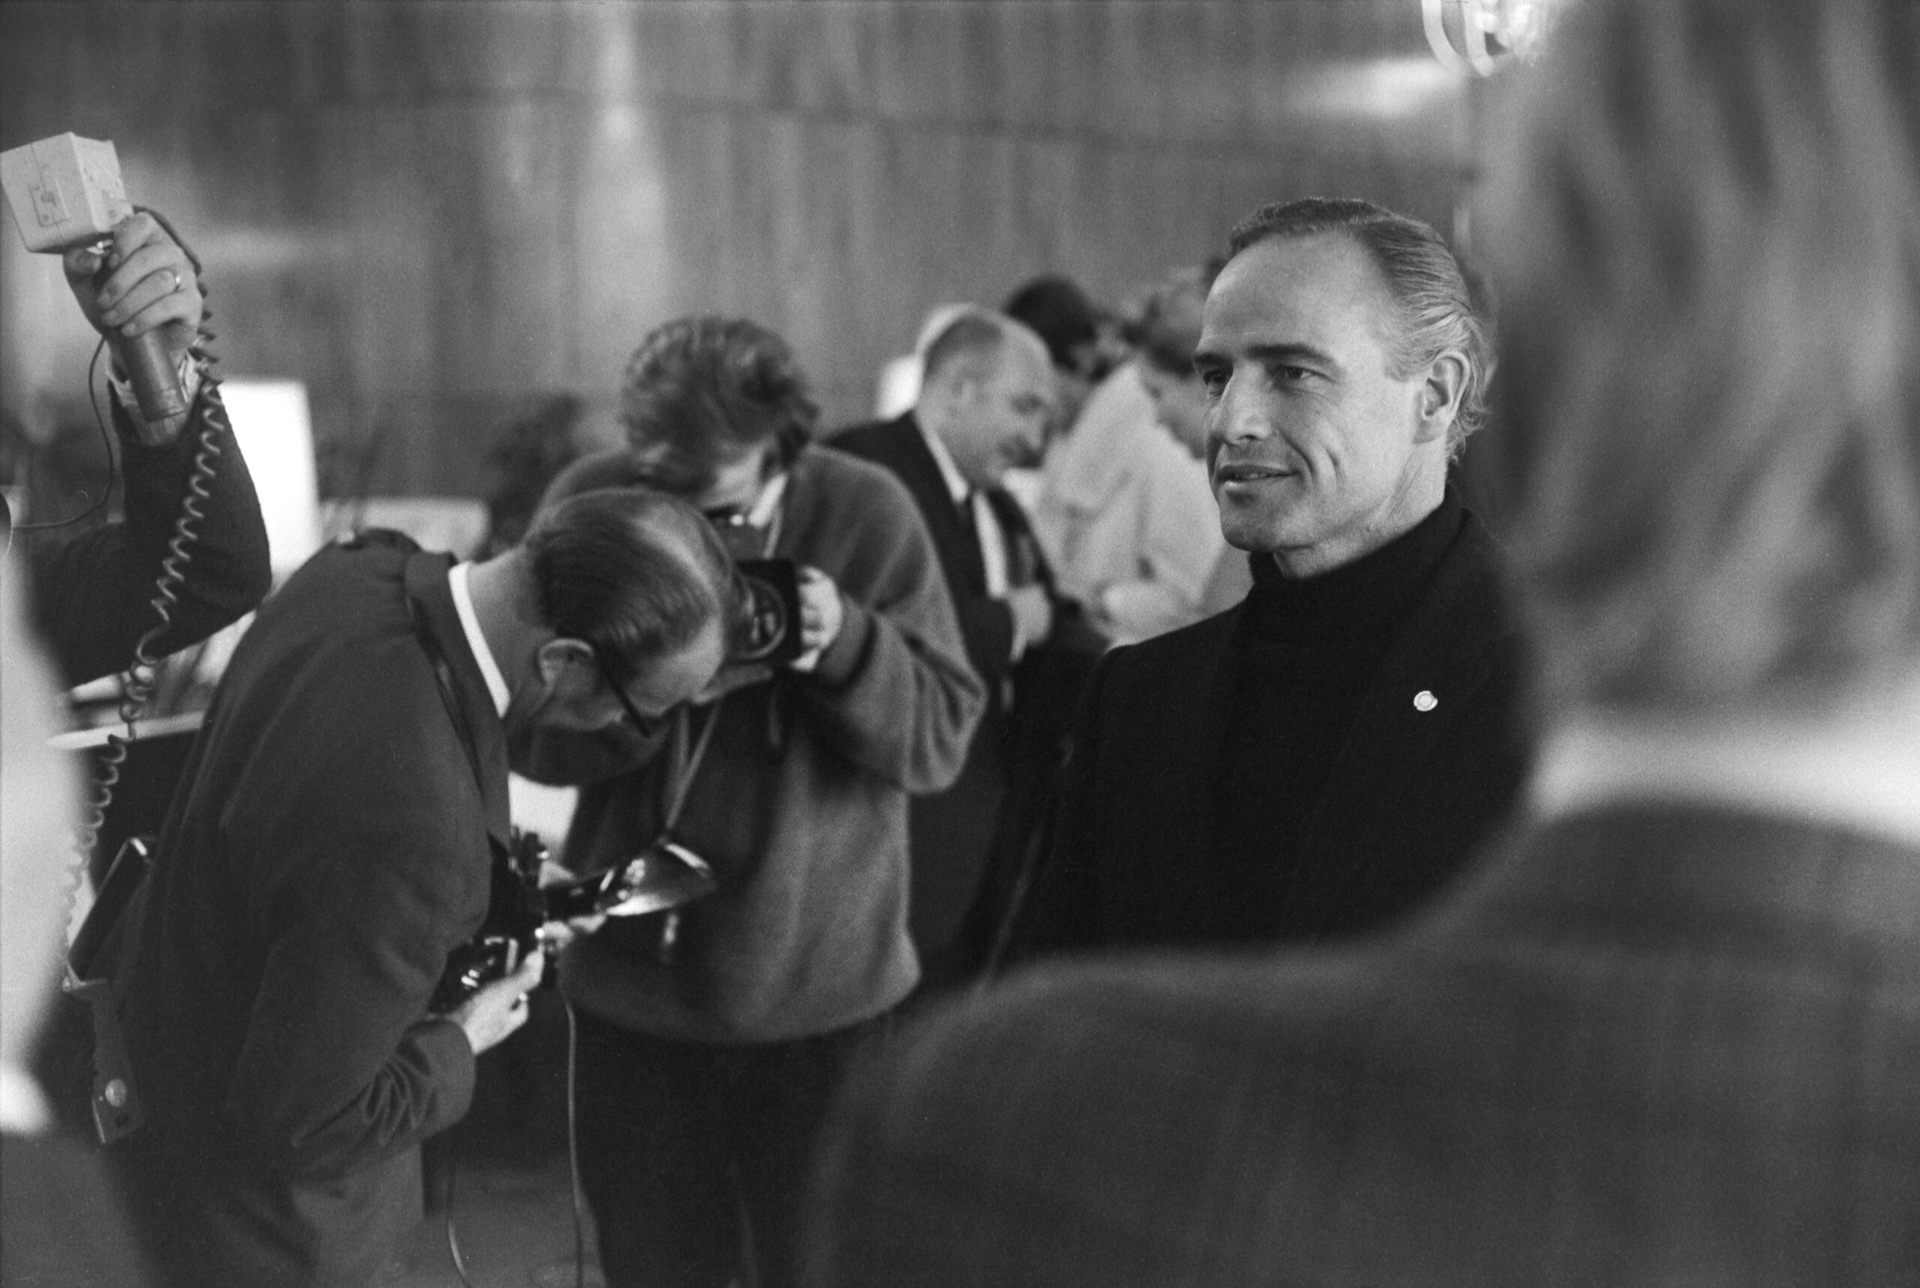 Cien años de Marlon Brando, la excelencia en la interpretación